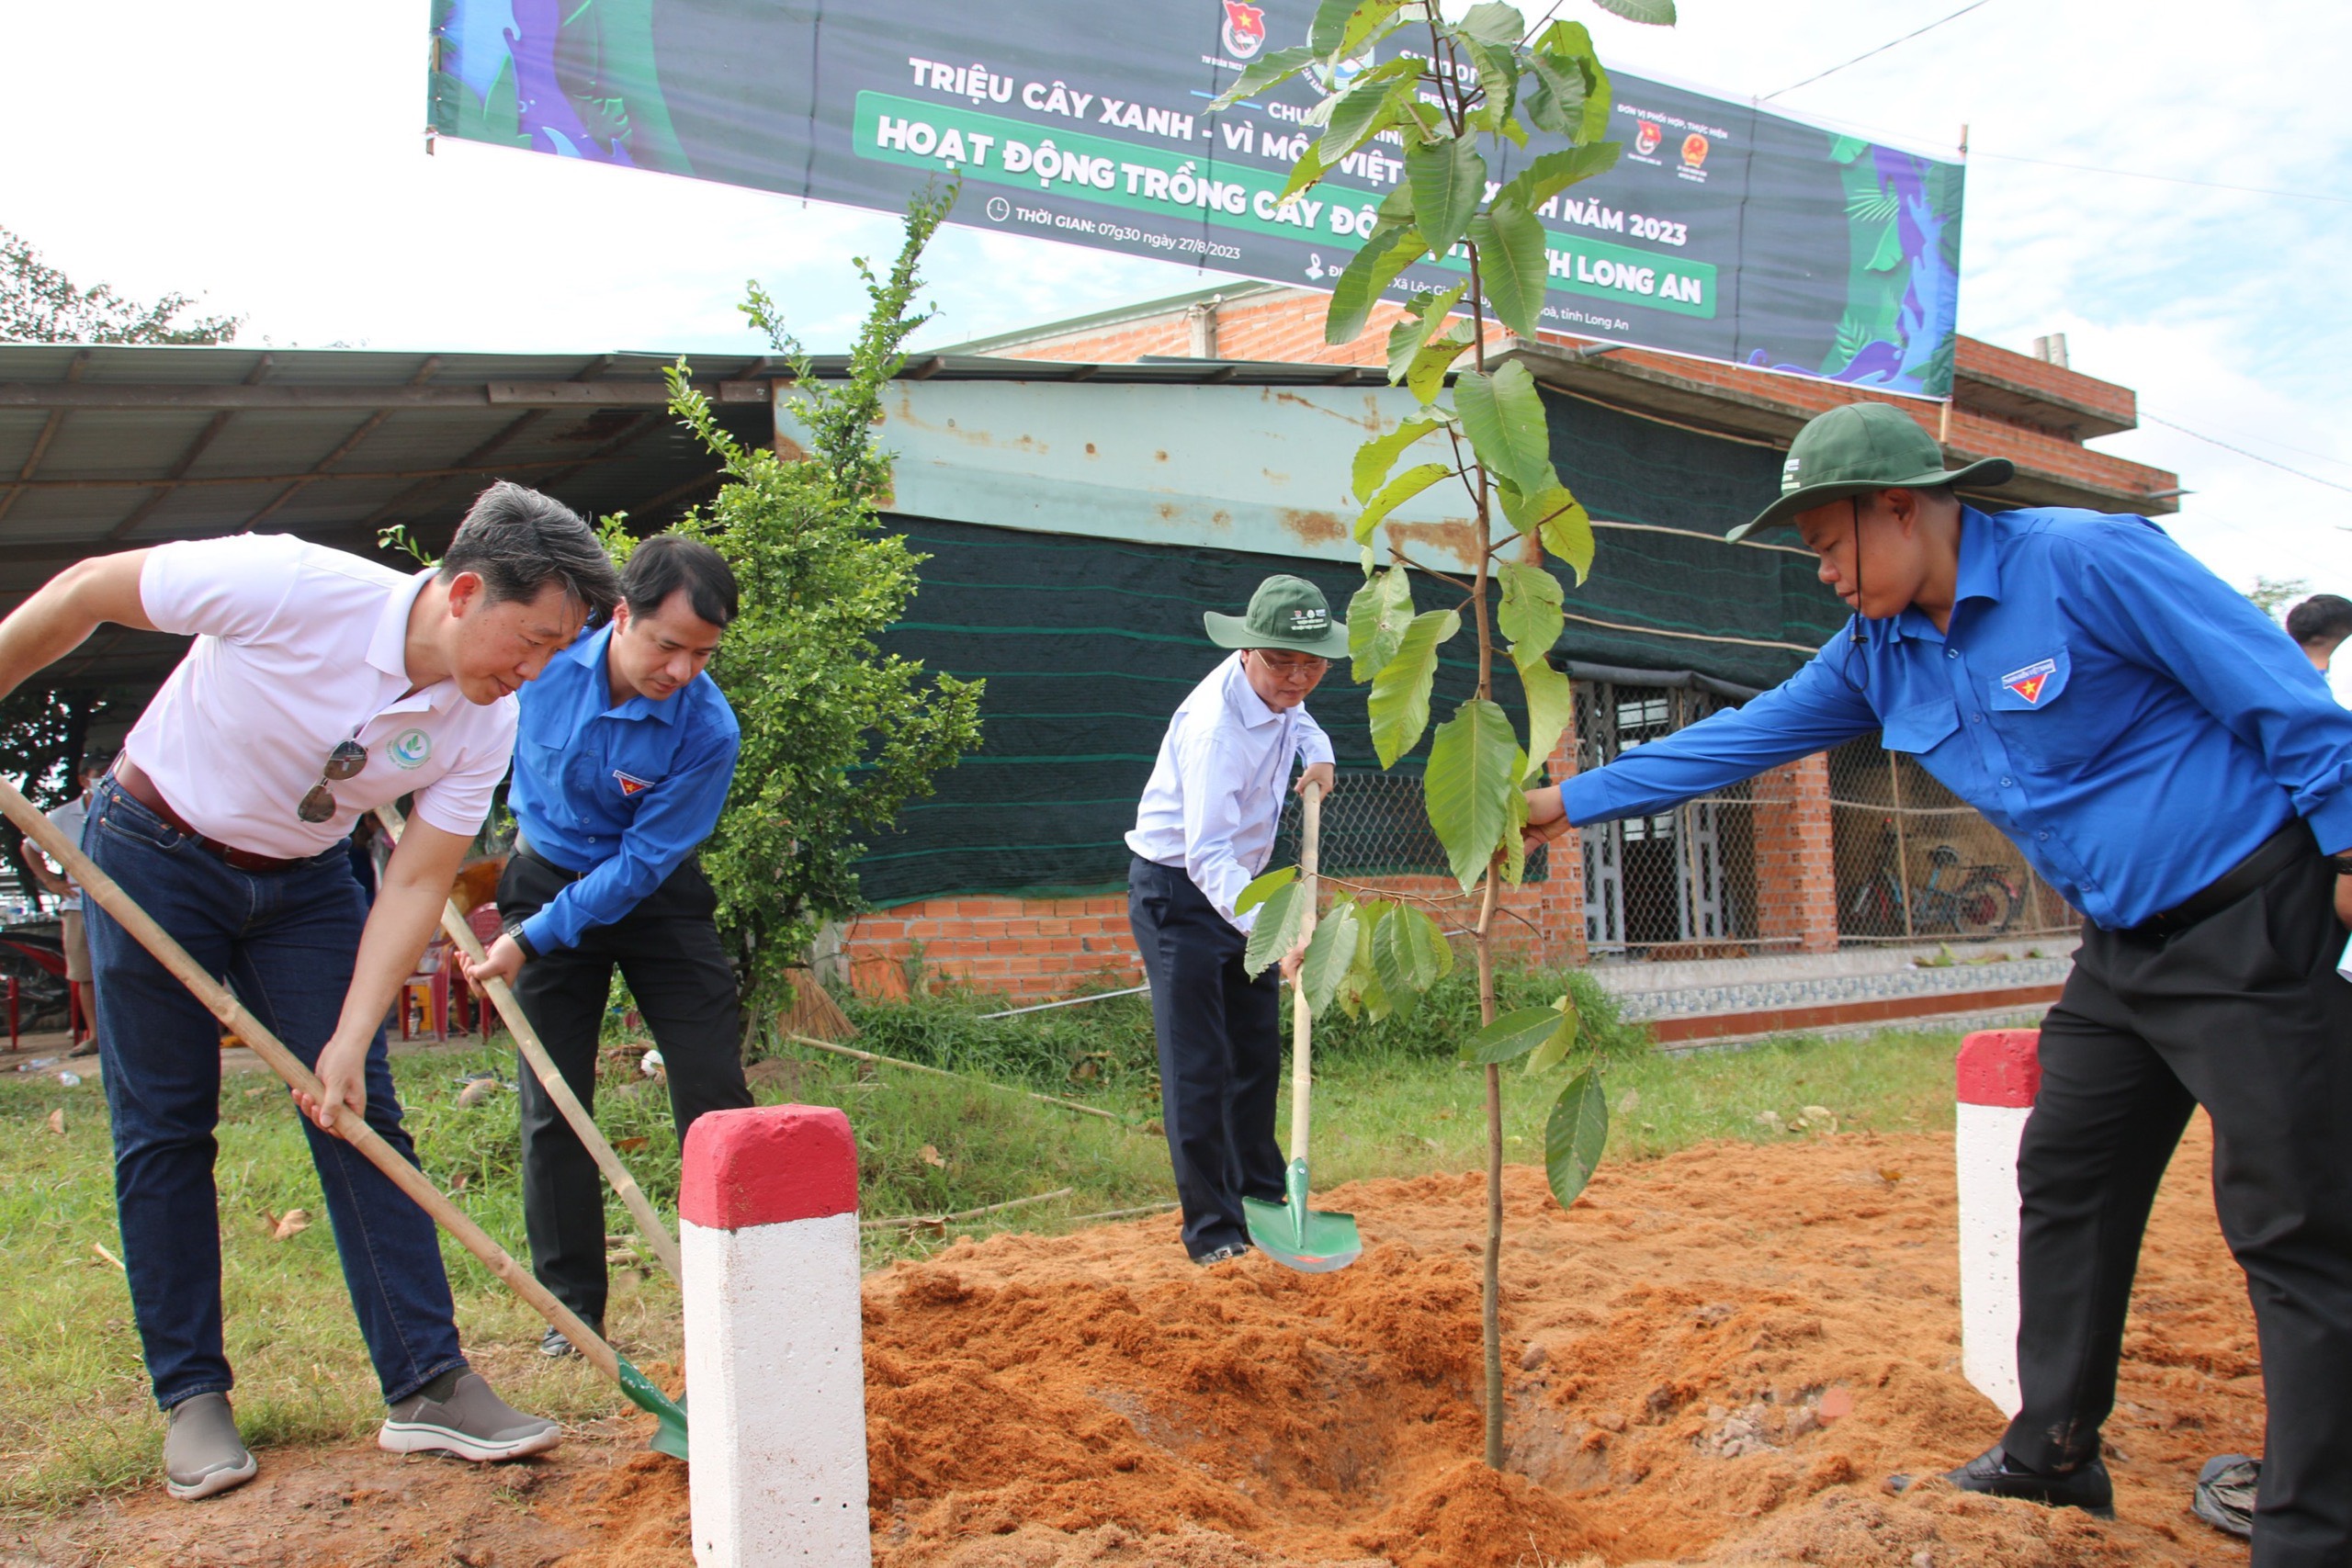 6.000 cây xanh được trồng mới tại Long An trong chương trình “Triệu cây xanh – Vì một Việt Nam xanh” năm 2023